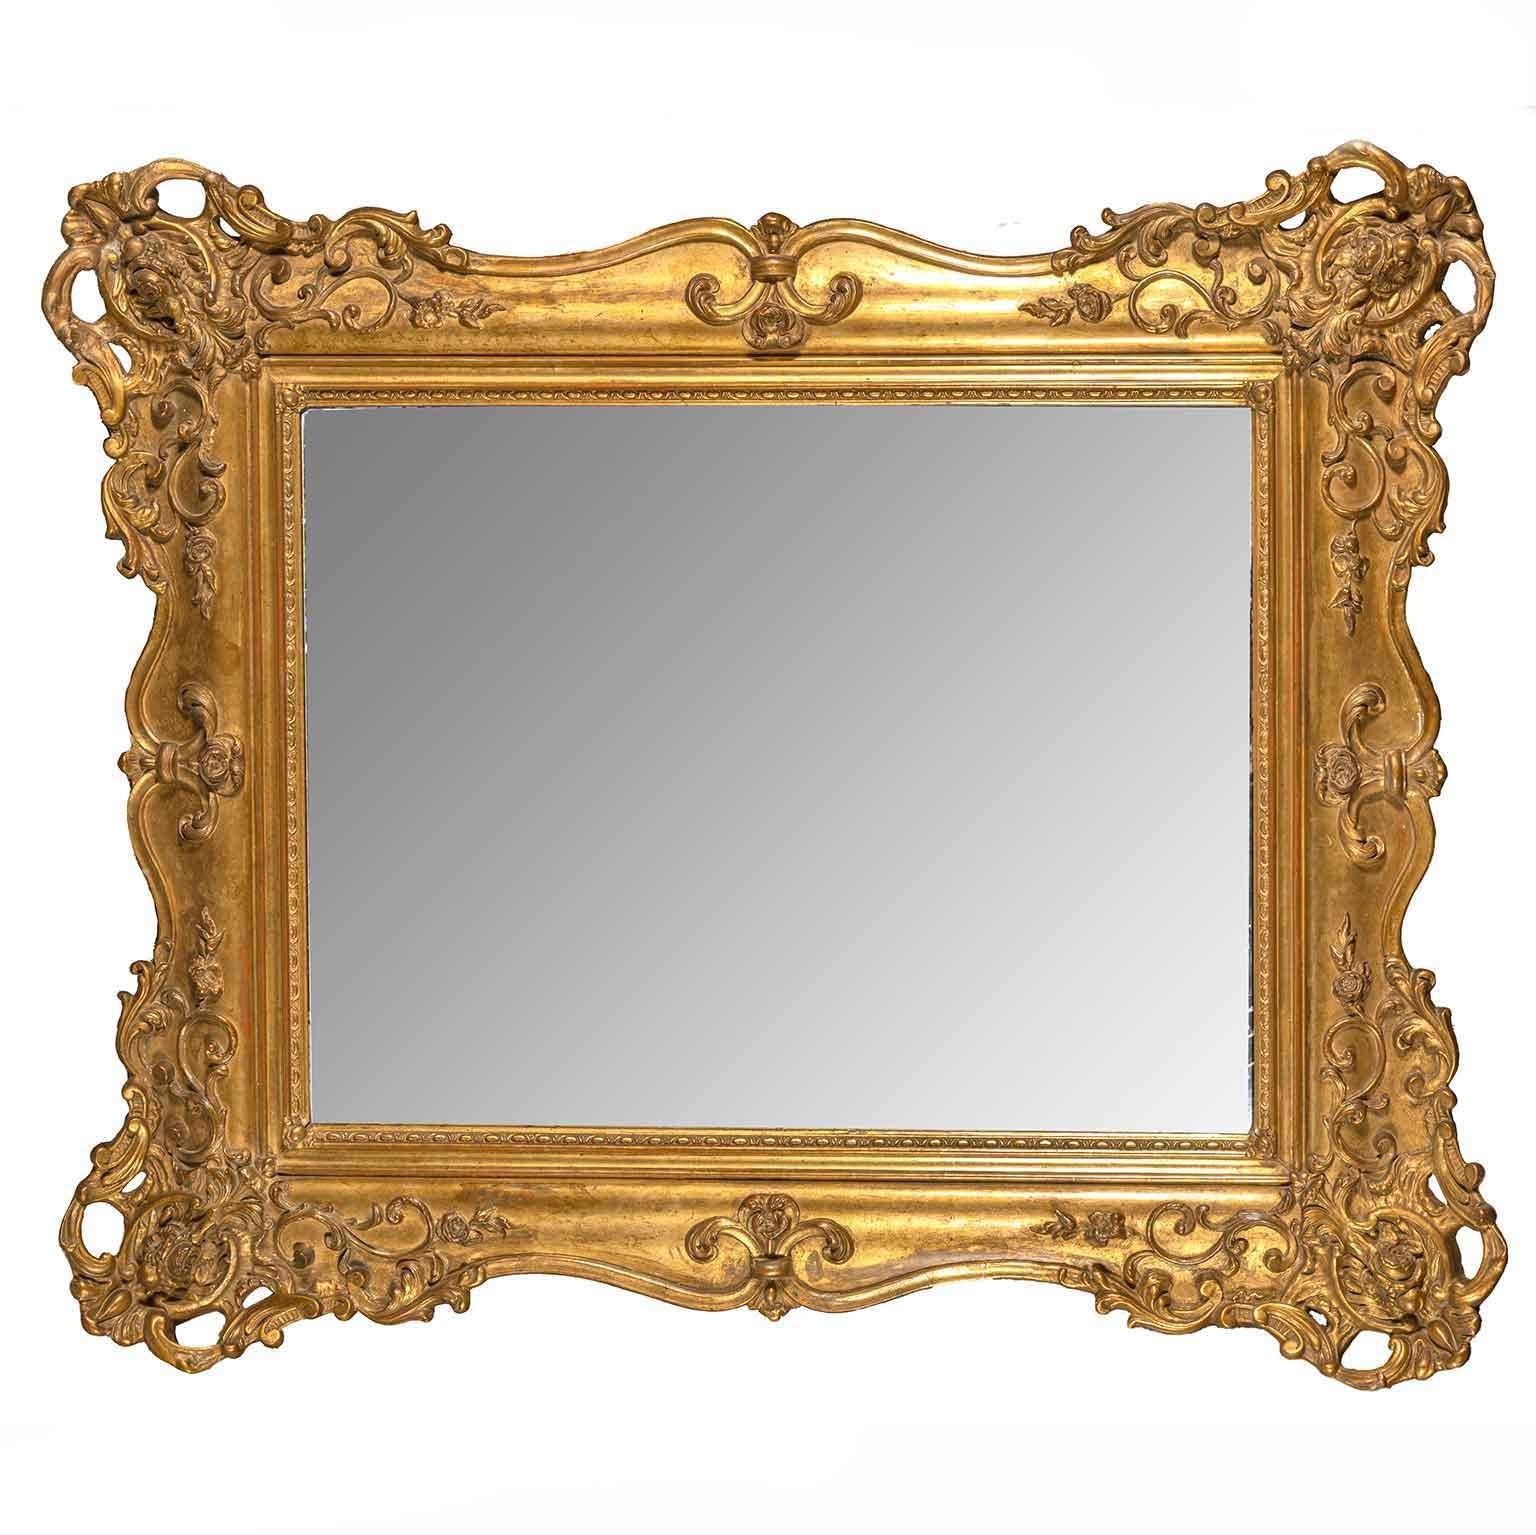 Specchiera Dorata Antica Francese Di fine 1800  in legno dorato e sagomato,  con specchio originale al mercurio in buono stato di conservazione a prescindere da qualche minimo segno verticale del vetro come visibile in fotografia.

Particolarmente